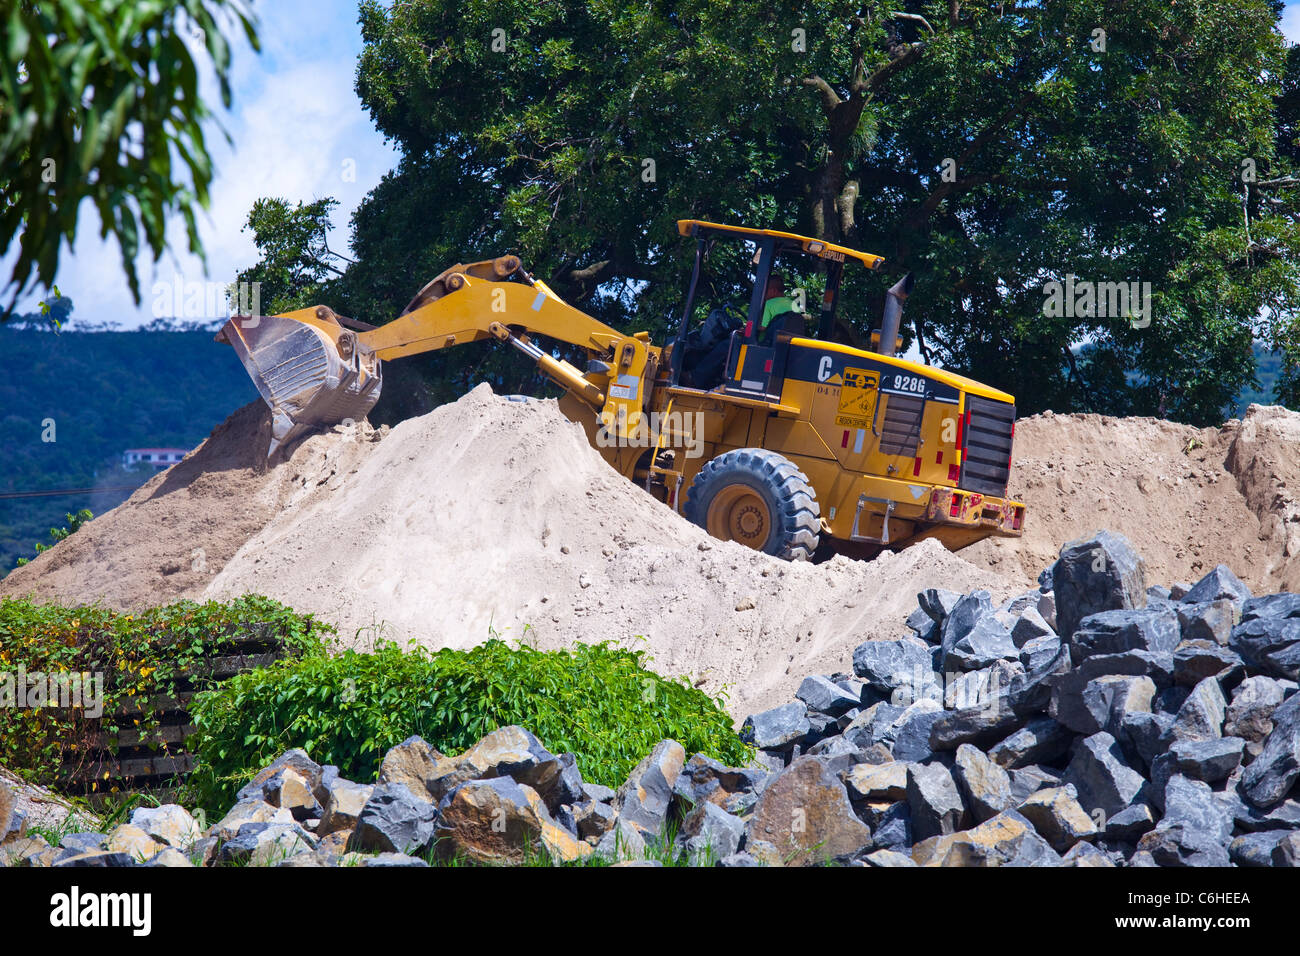 Construction project in San Salvador, El Salvador Stock Photo